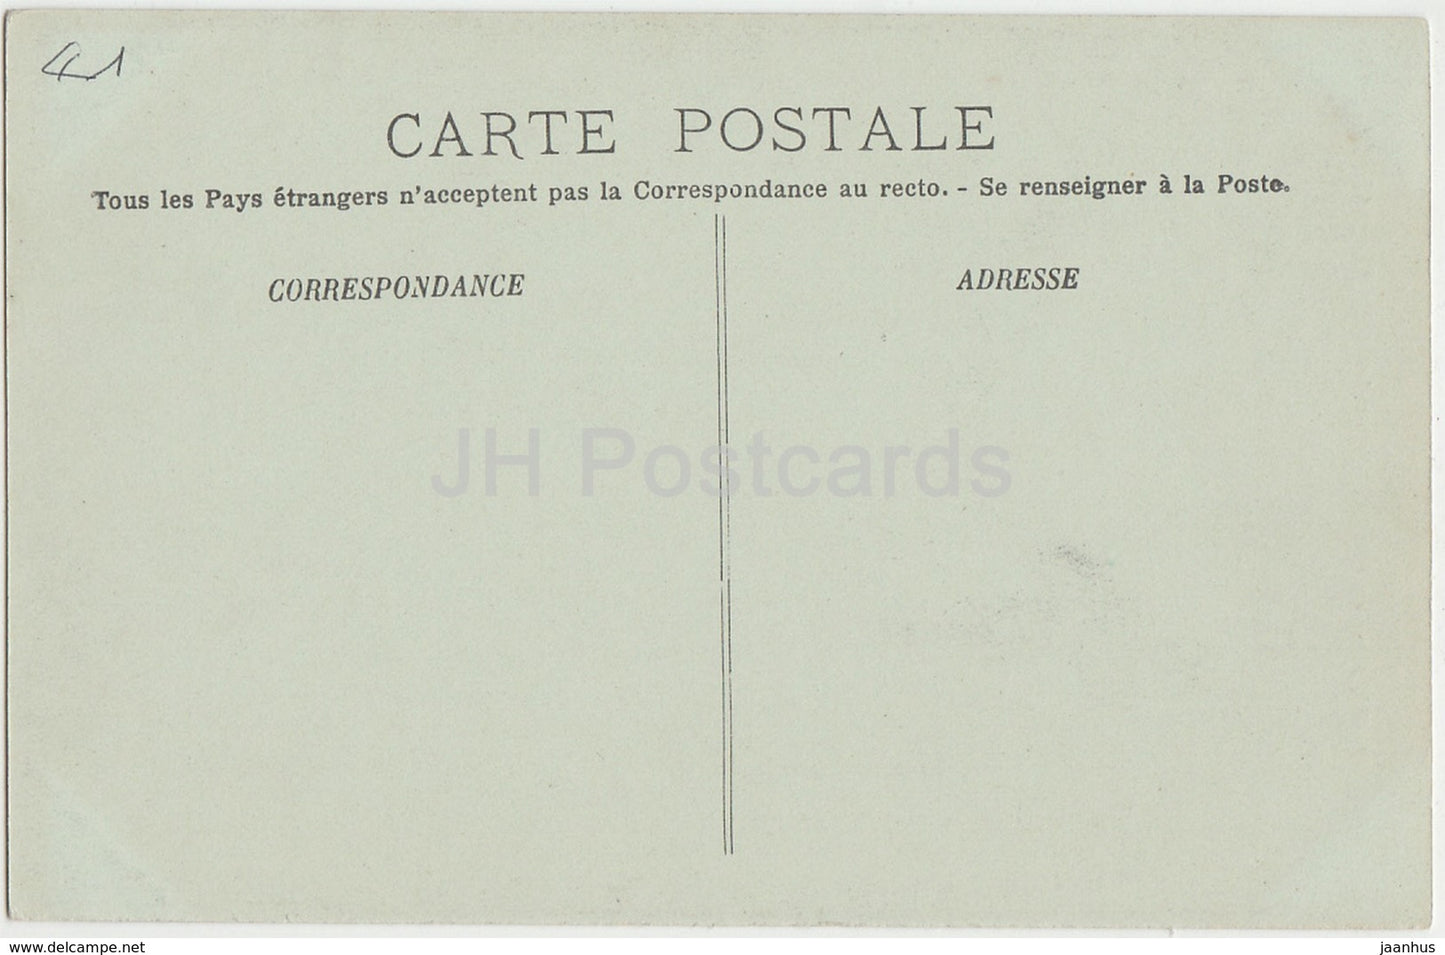 Blois - La Chateau - Aile François Ier - Cheminée de la Bibliothèque de Médicis - 86 - carte postale ancienne - France - inutilisée